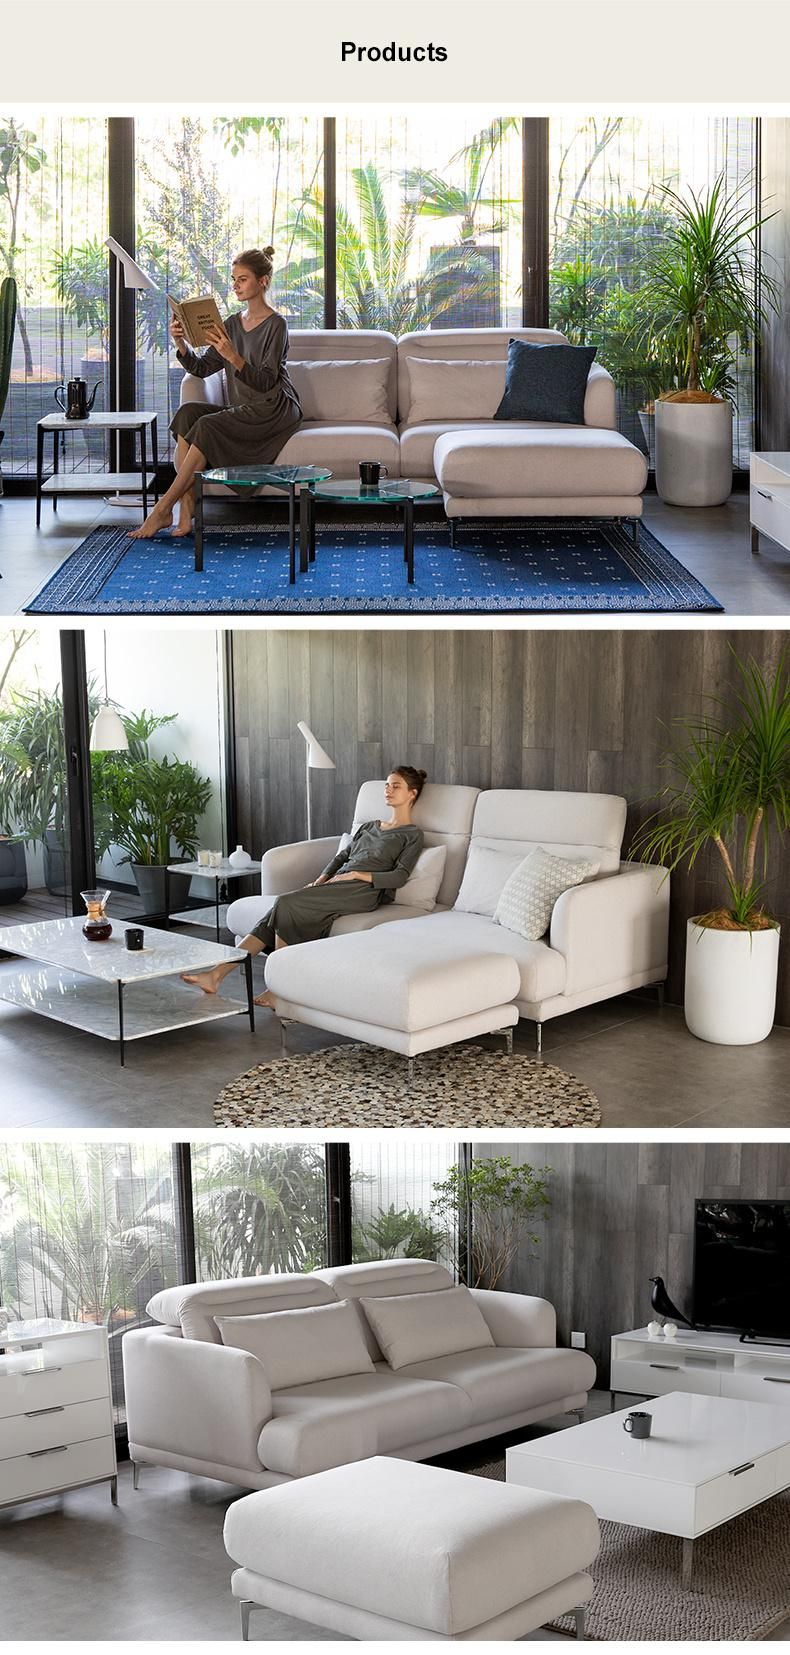 Hot Sponge with Armrest Sectional Modern Living Room Furniture Sofa